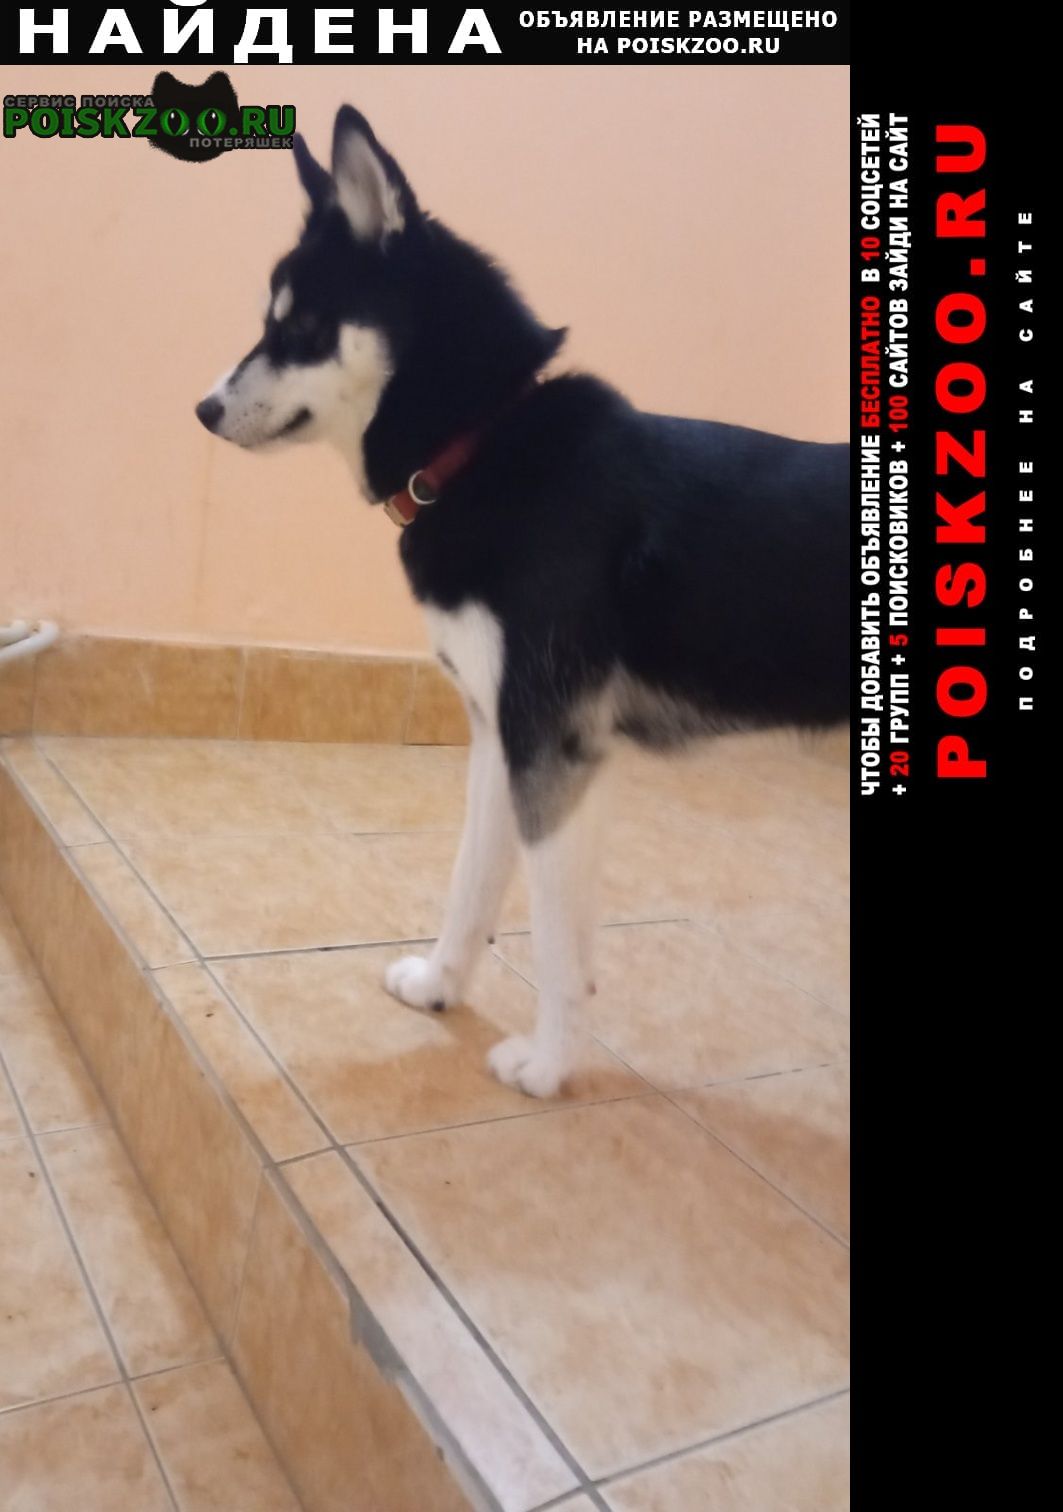 Найдена собака Пермь